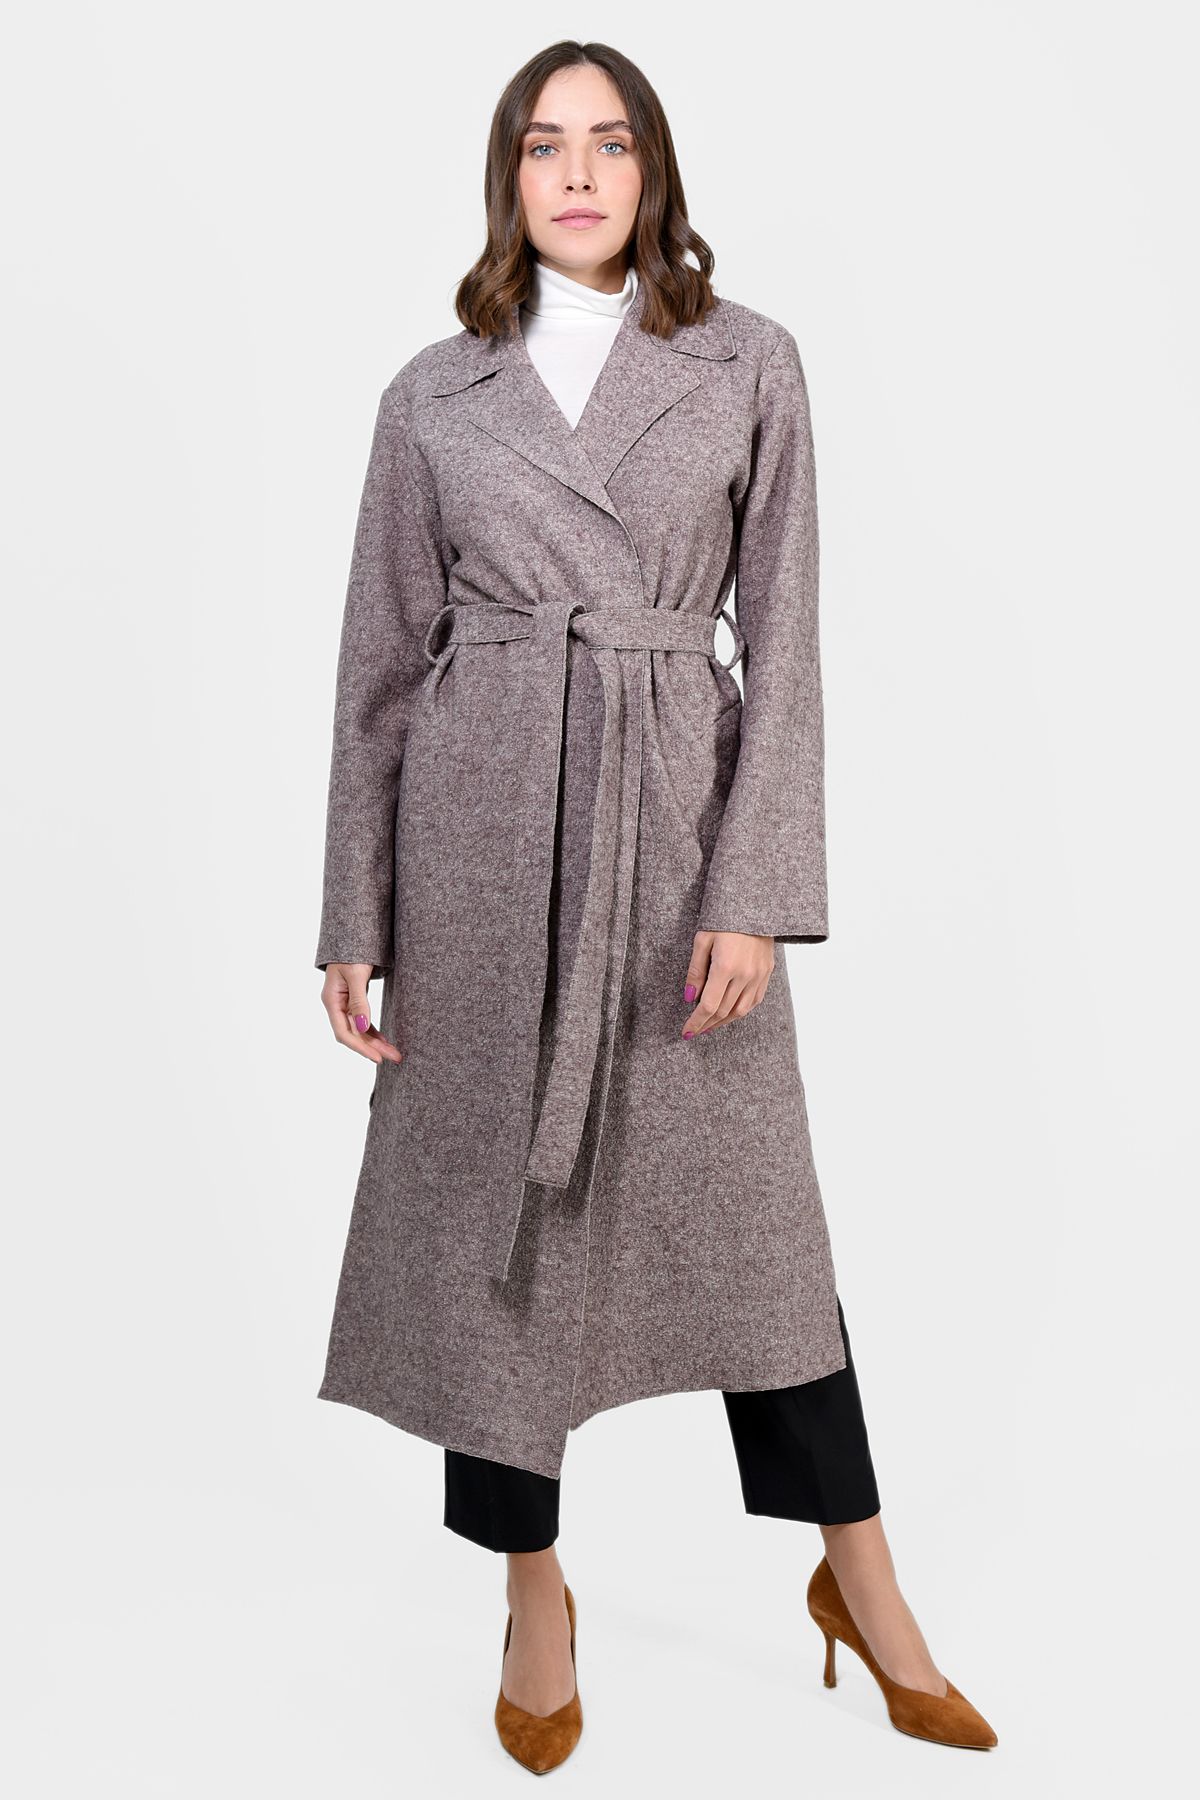 Пальто: Пальто Эмми в составе 60% шерсть 40% вискоза, цена от 22500 руб. в интернет-магазине LinoRusso